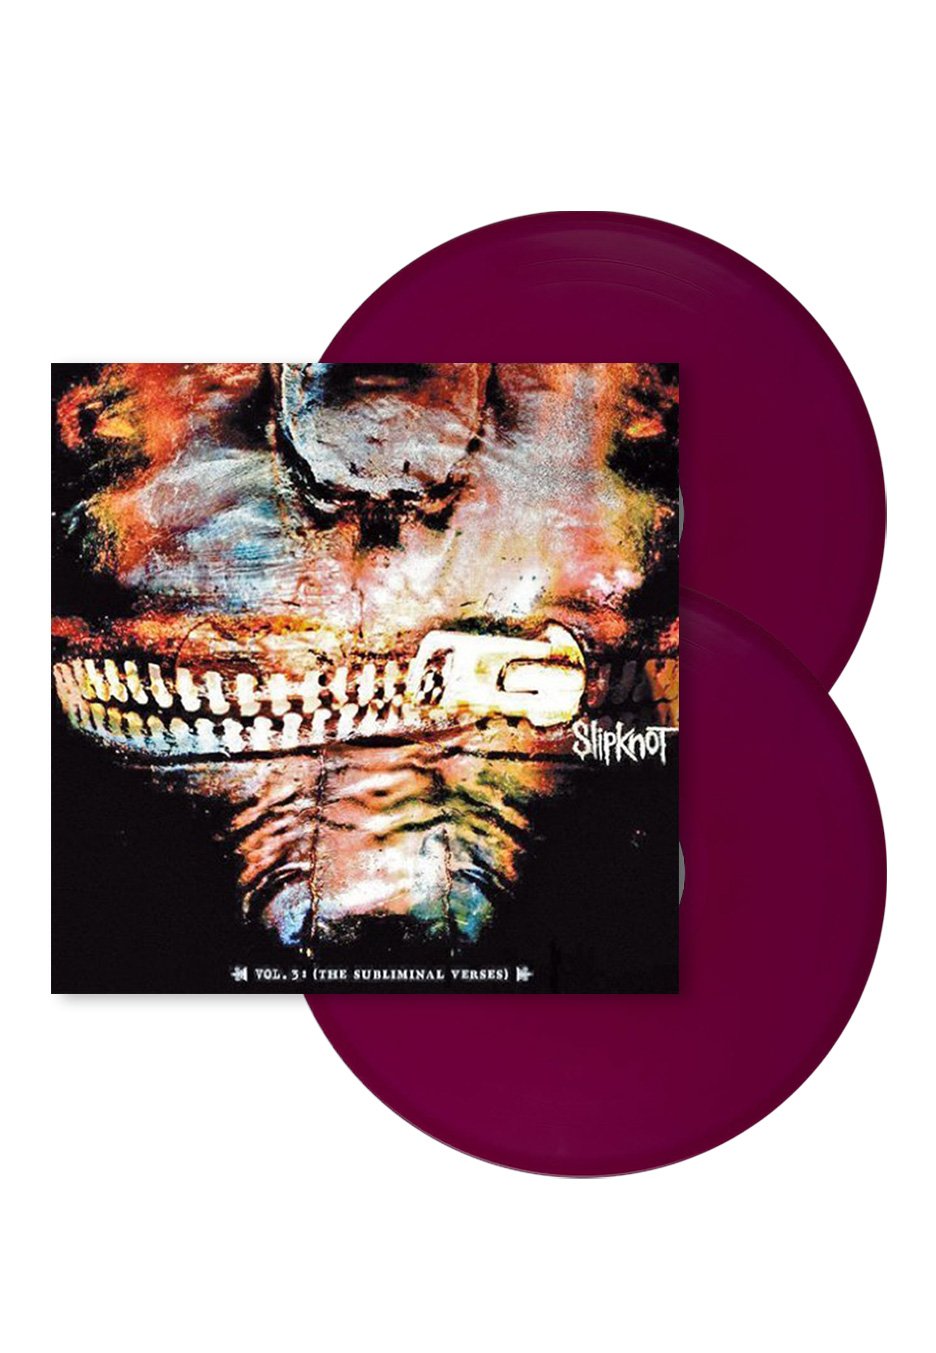 Slipknot - Vol.3 The Subliminal Verses Ltd. Grape - Colored 2 Vinyl